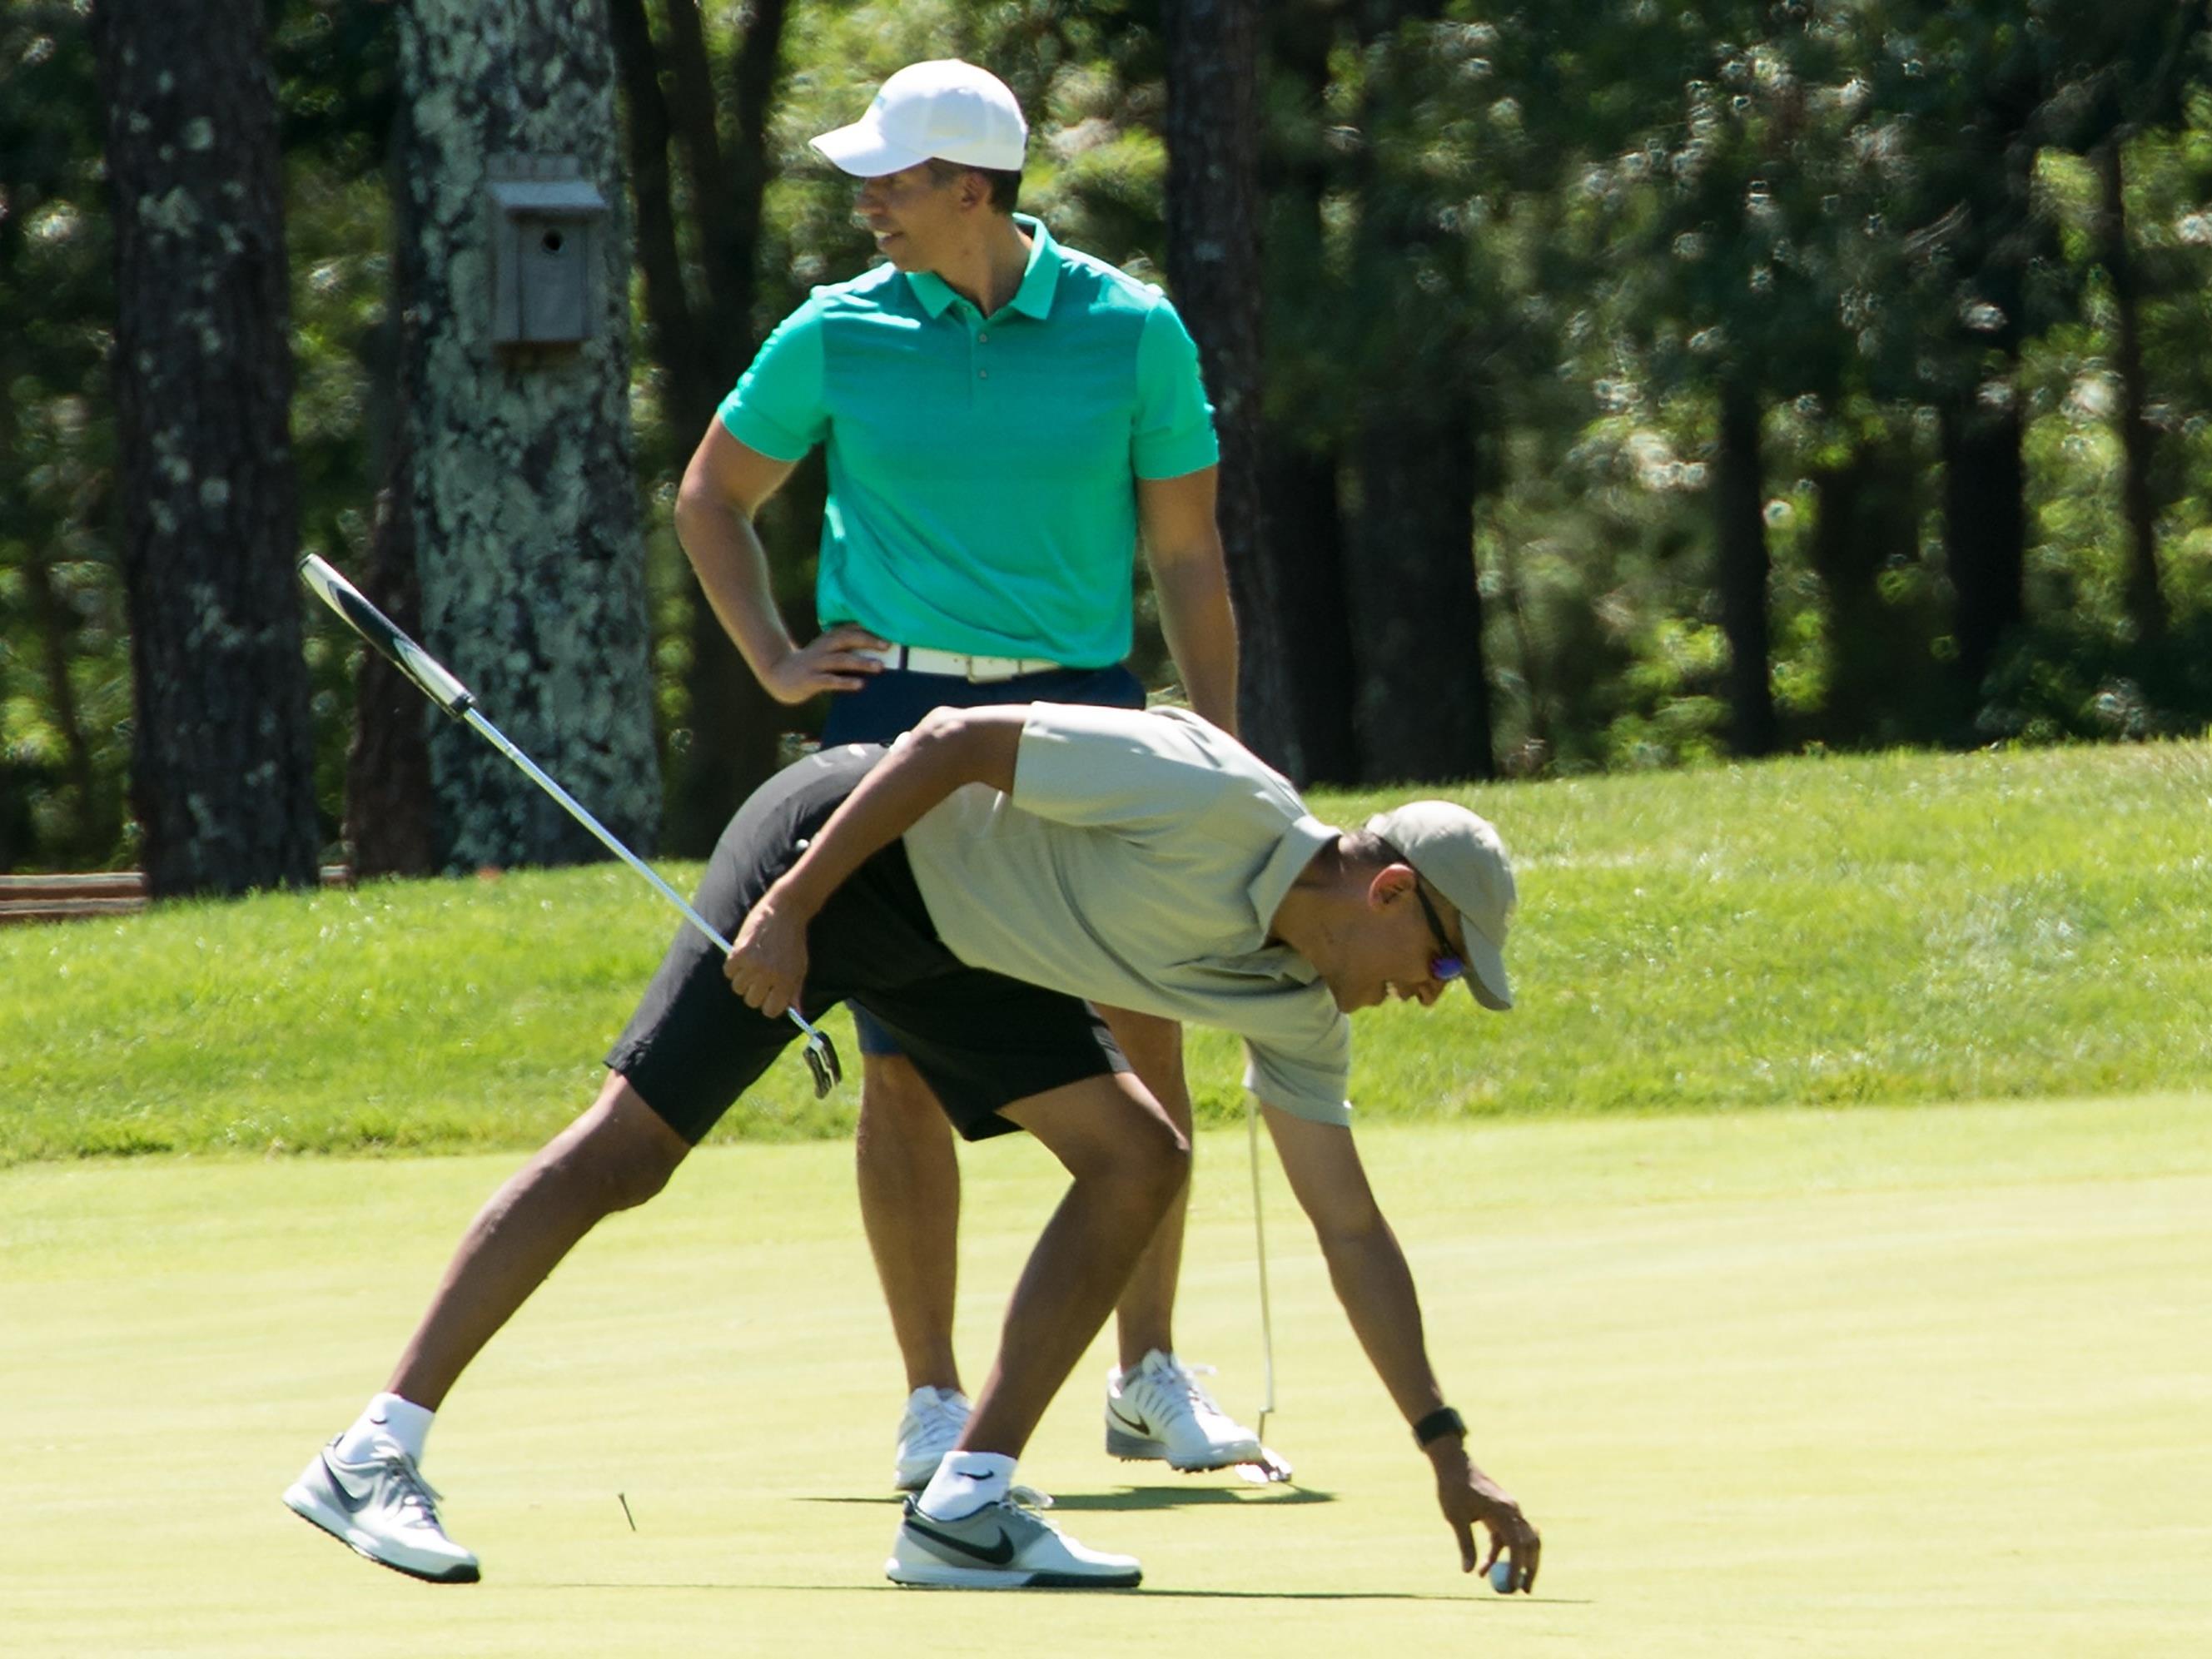 Barack Obama im Urlaub beim Golf spielen.